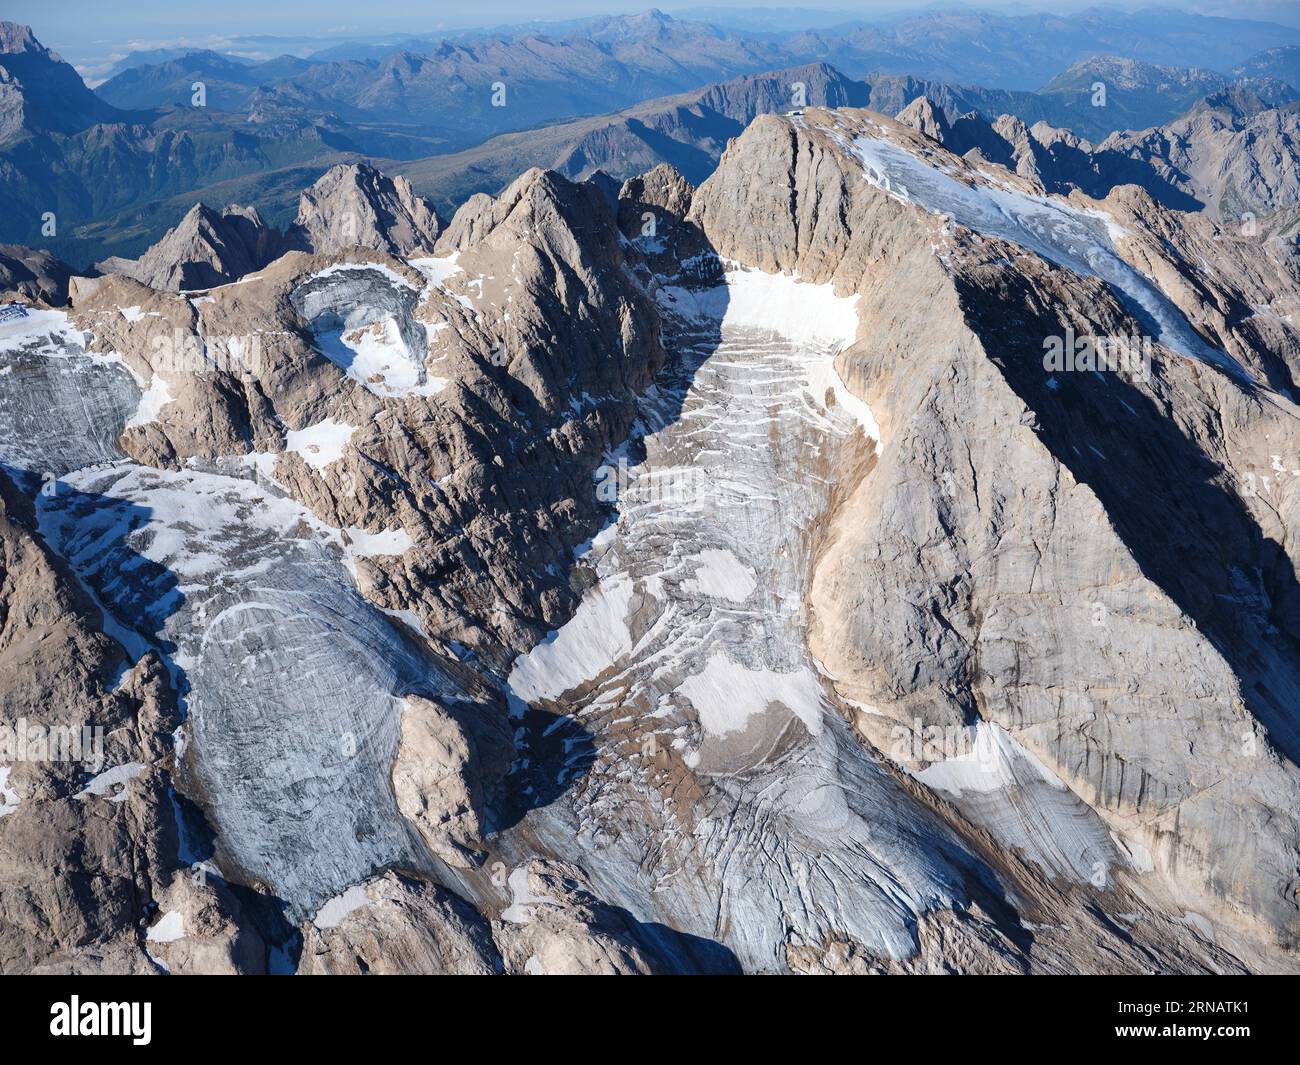 VUE AÉRIENNE. Côté nord de la Marmolada (3343m) et les seuls glaciers des Dolomites. Trentin-Haut-Adige (côté sud est en Vénétie), Italie. Banque D'Images